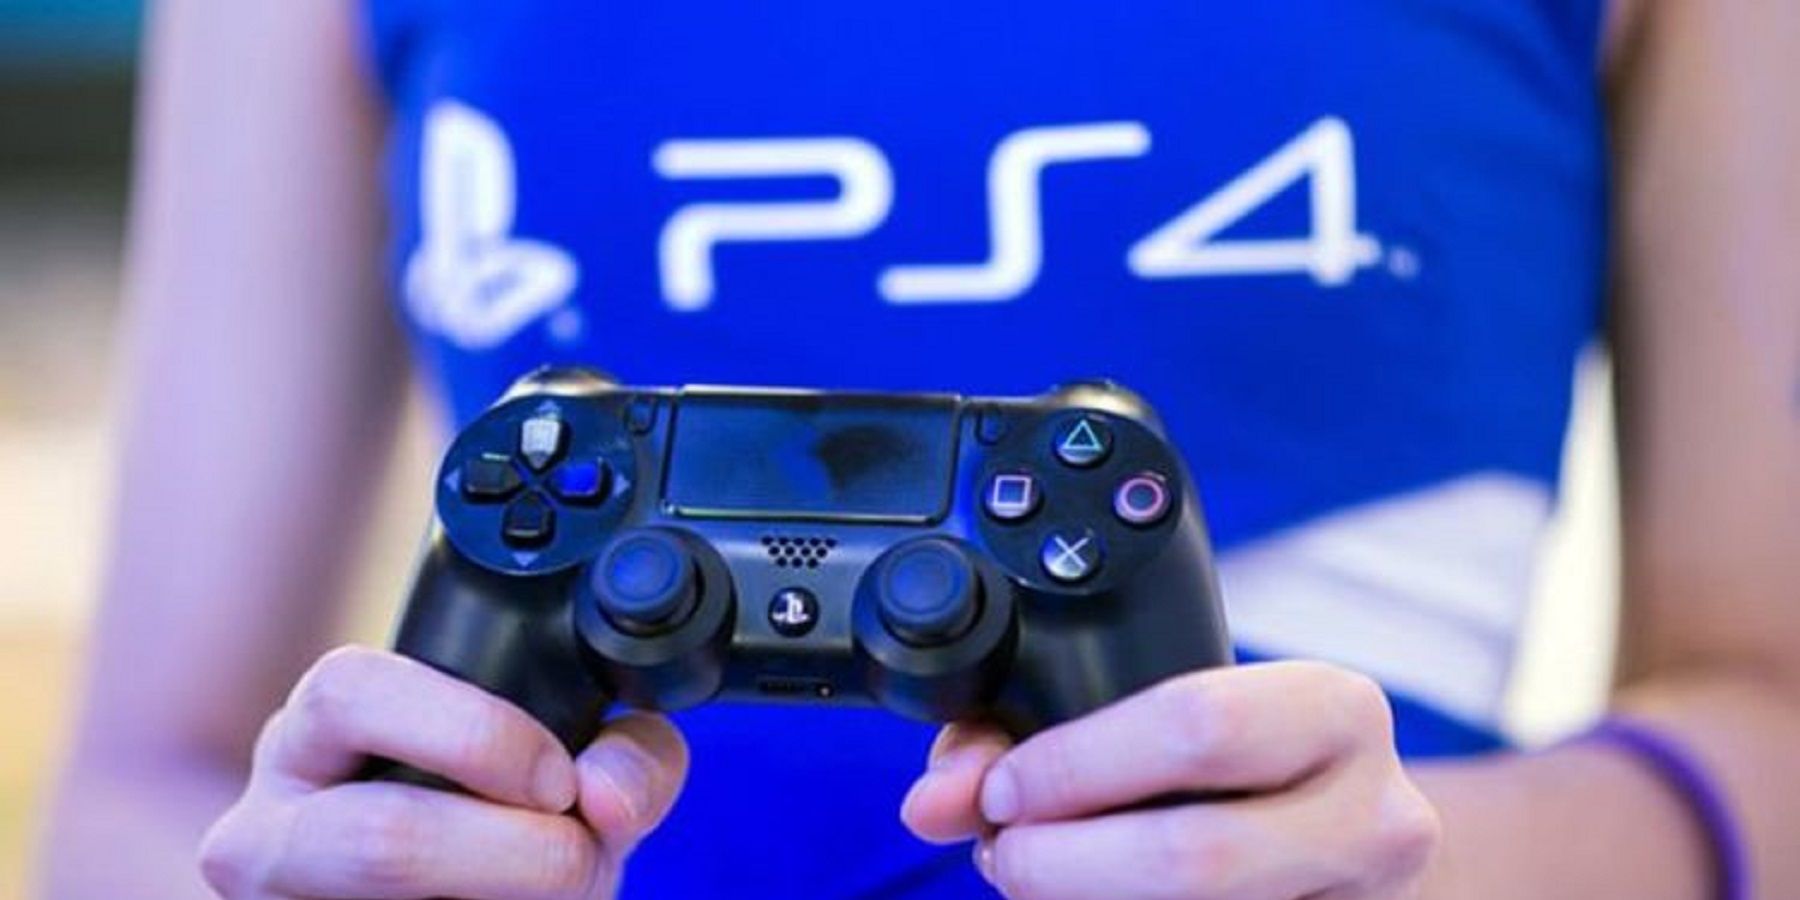 Pletyka: A PlayStation Now új játékok 2021 októberére kiszivároghattak az interneten